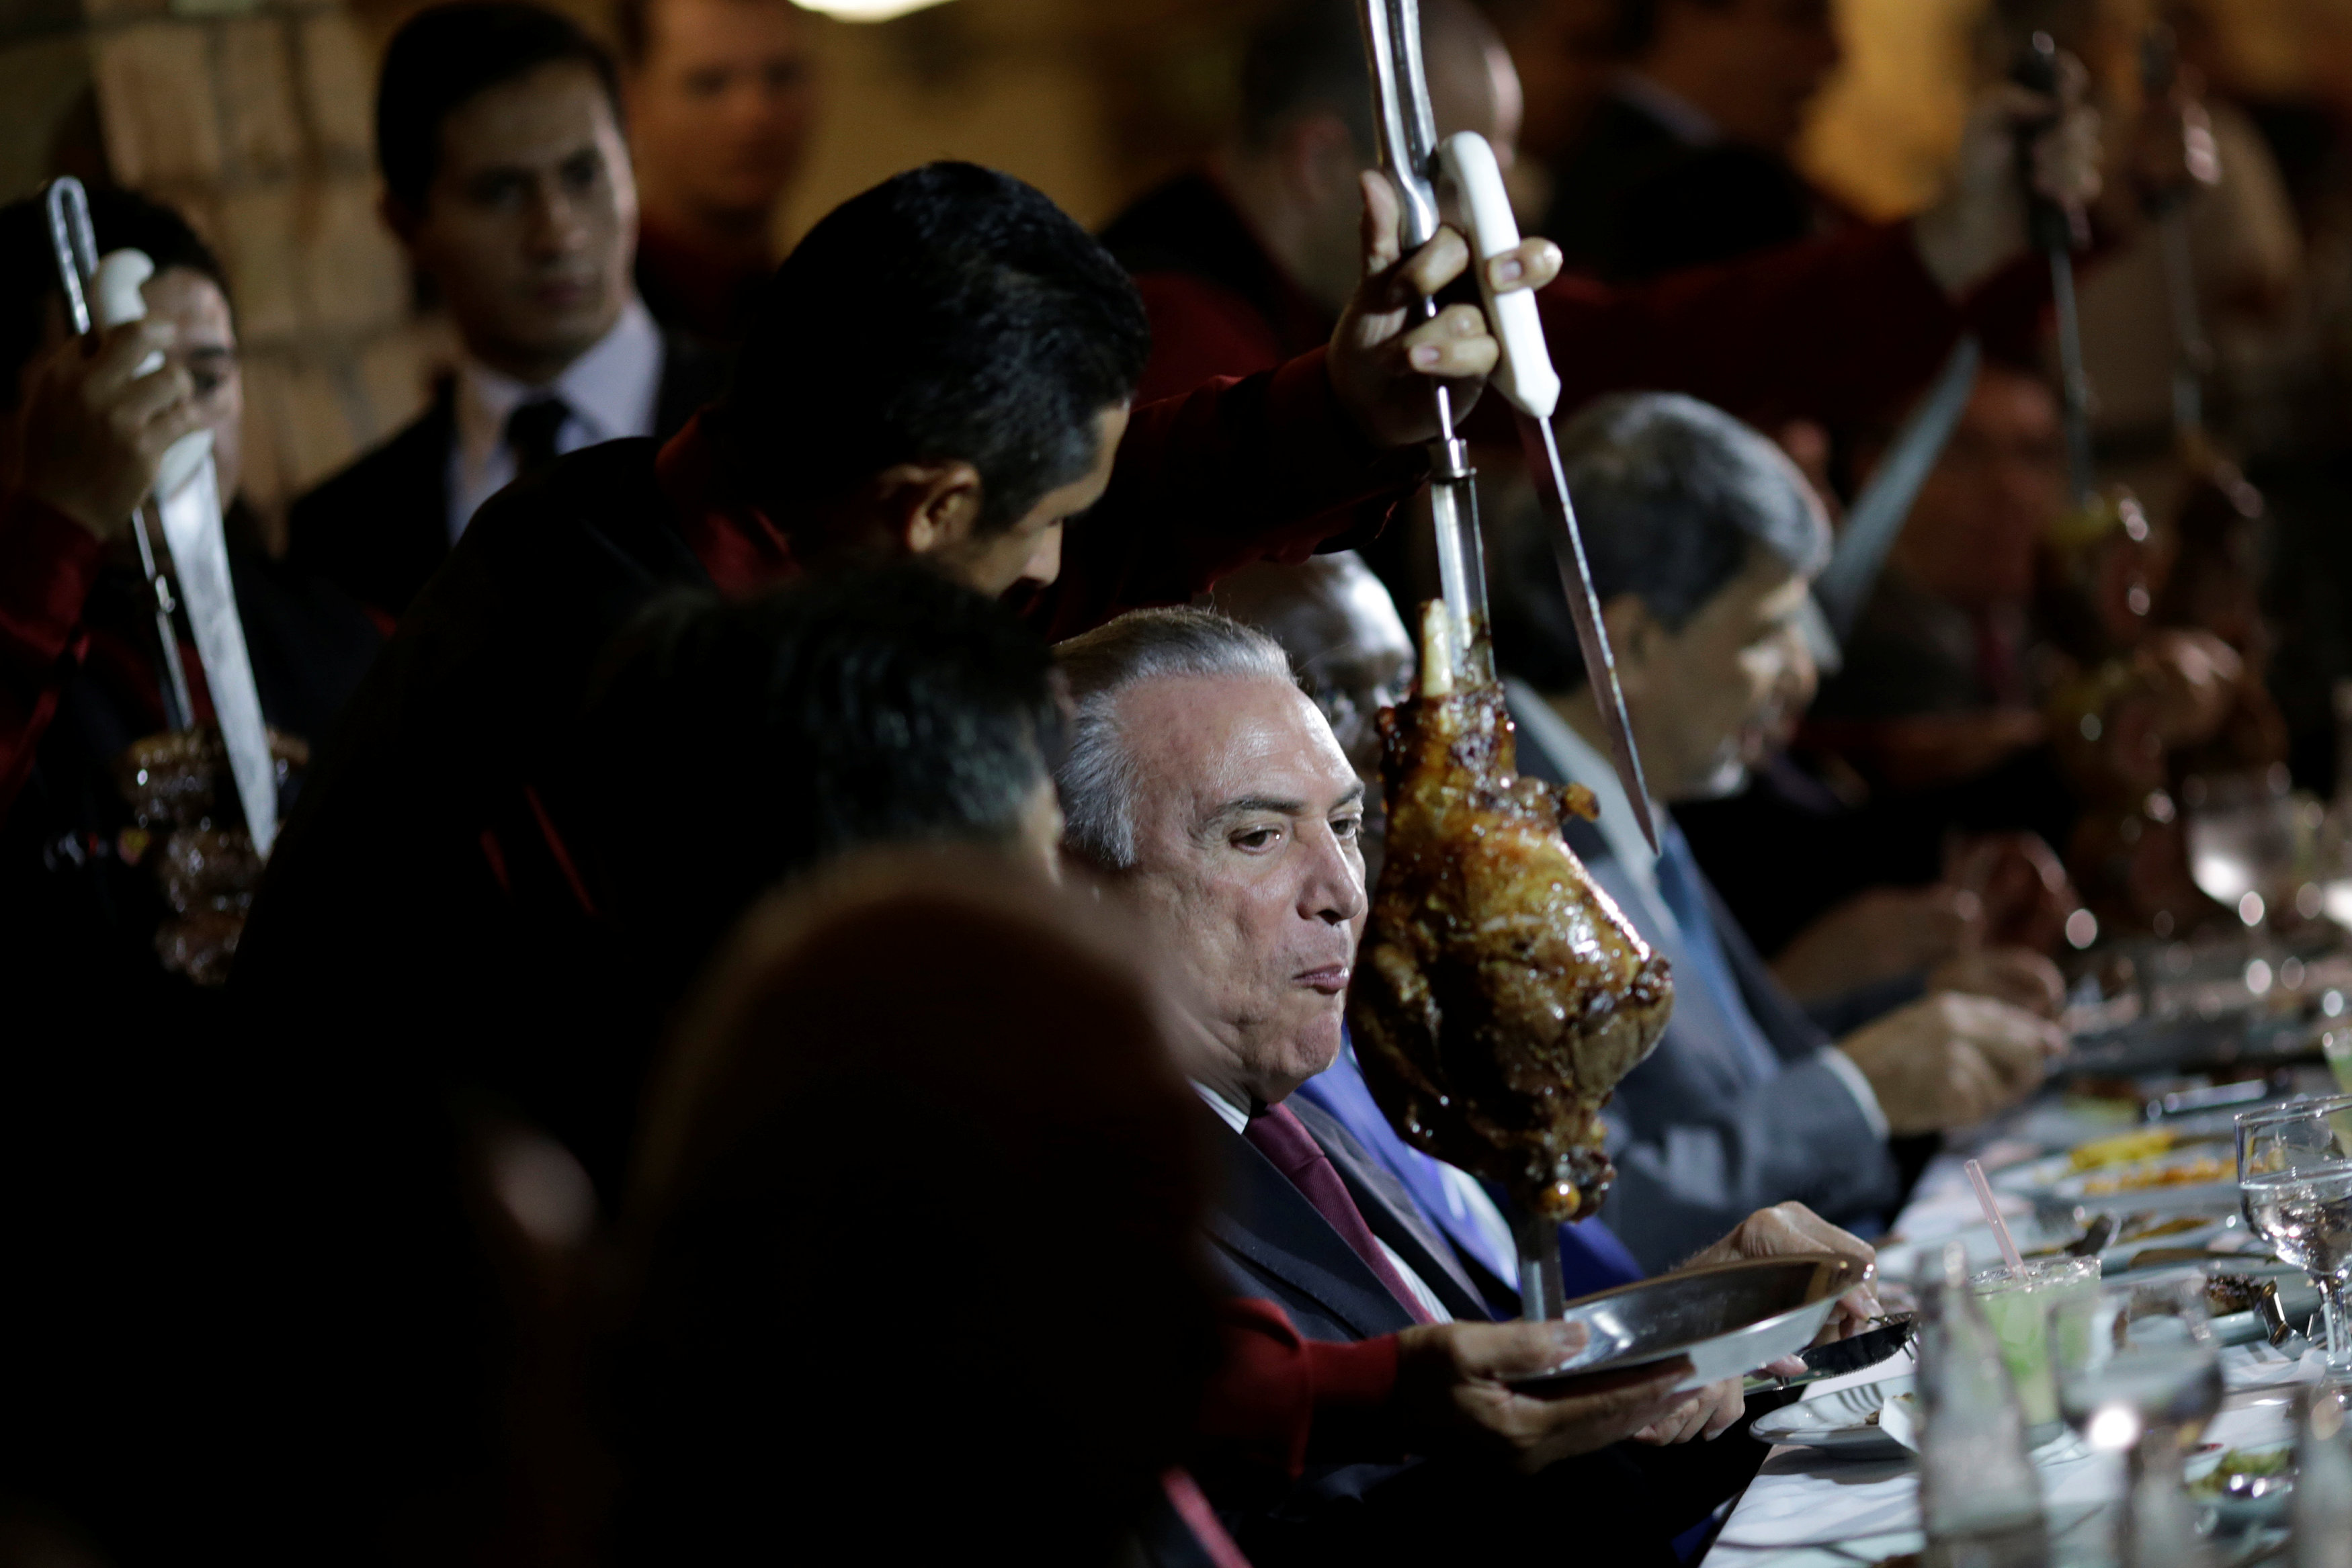 ميشيل تامر رئيس البرازيل خلال تناولة اللحوم